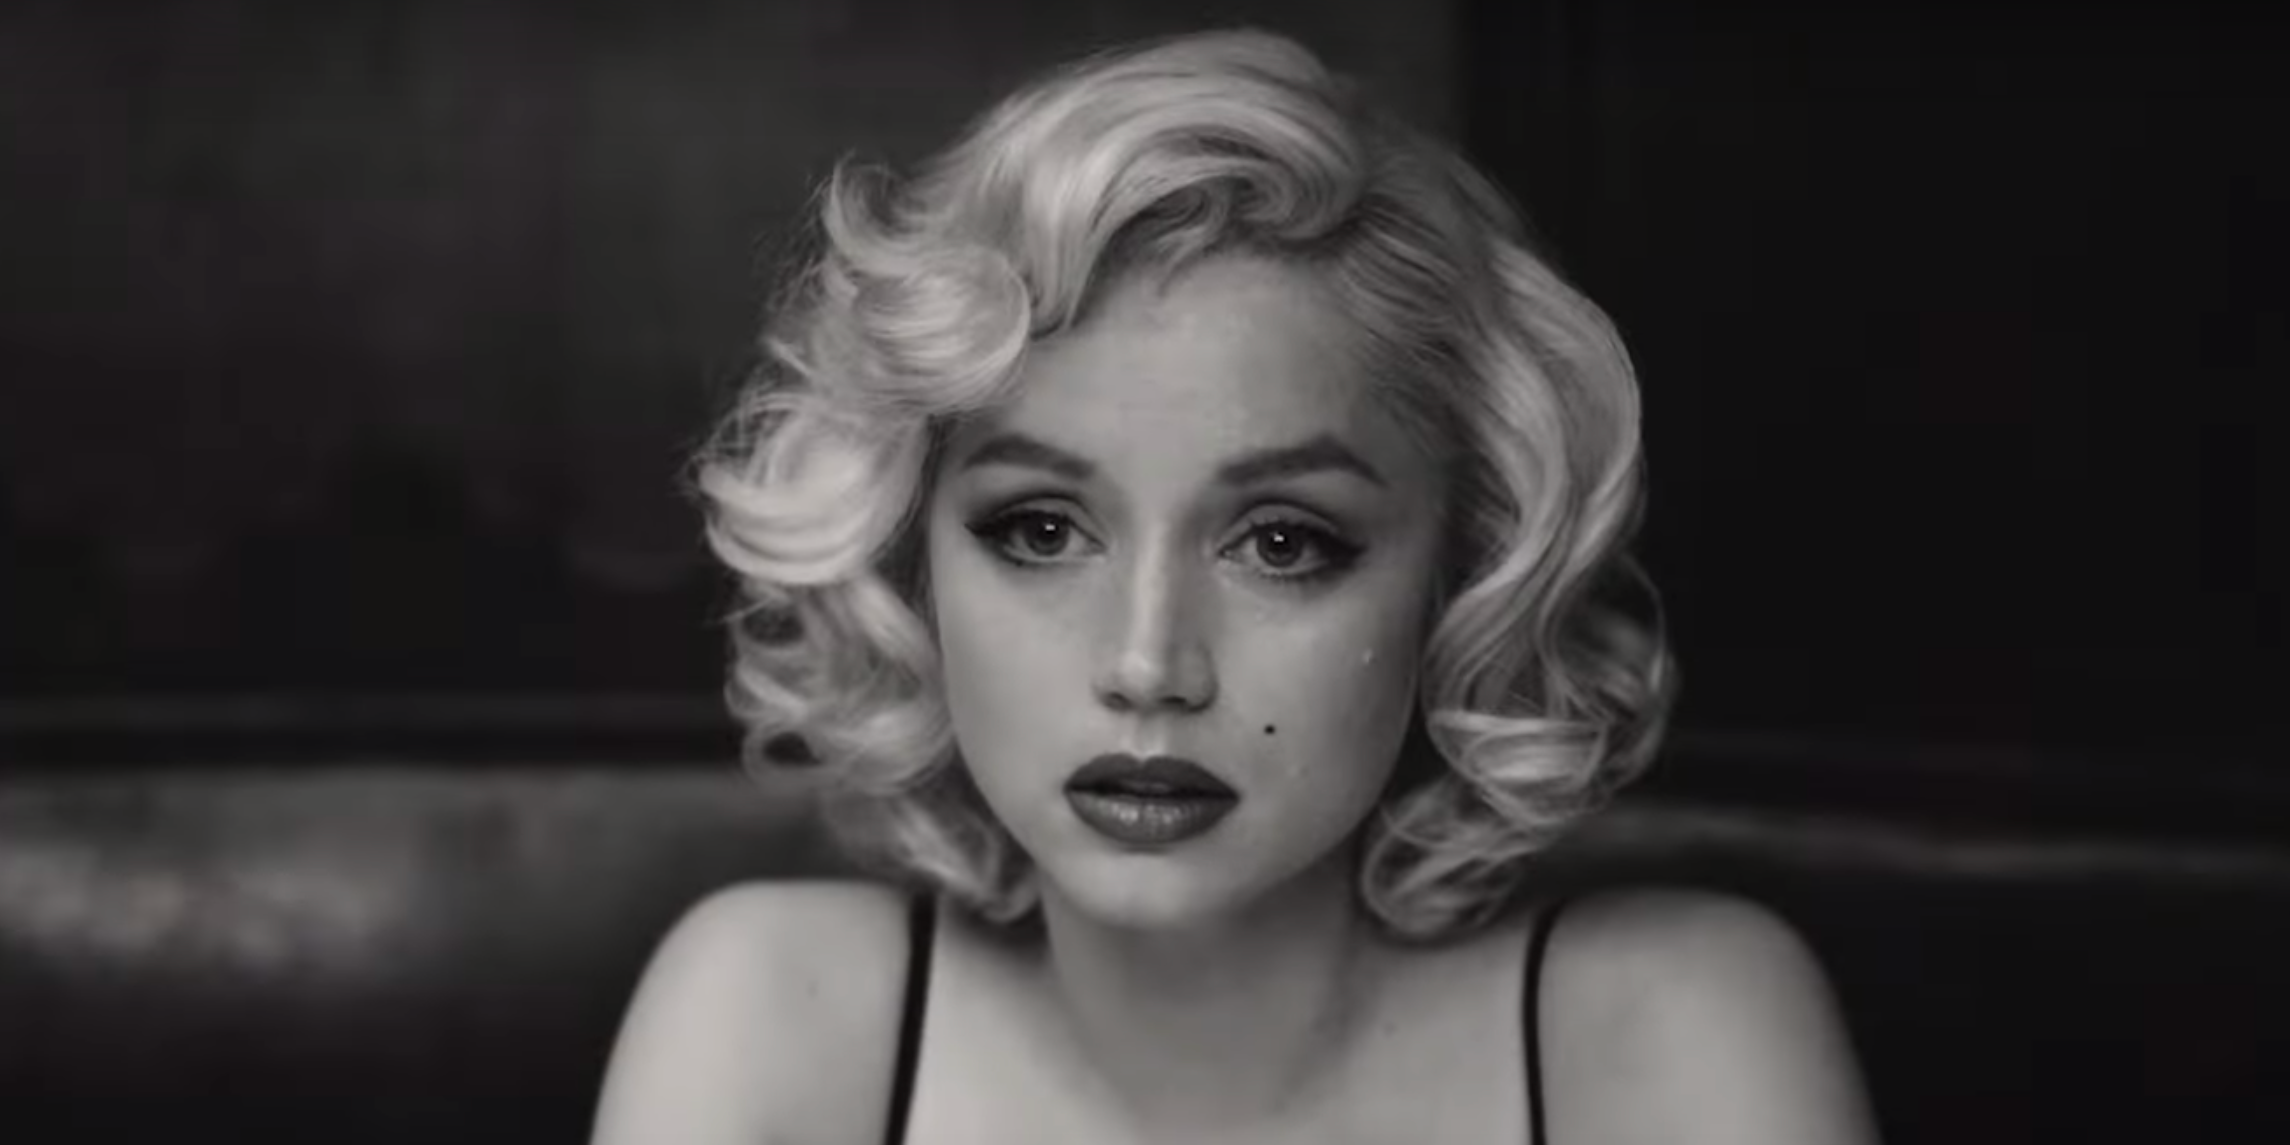 Marilyn looking sad in Blonde.